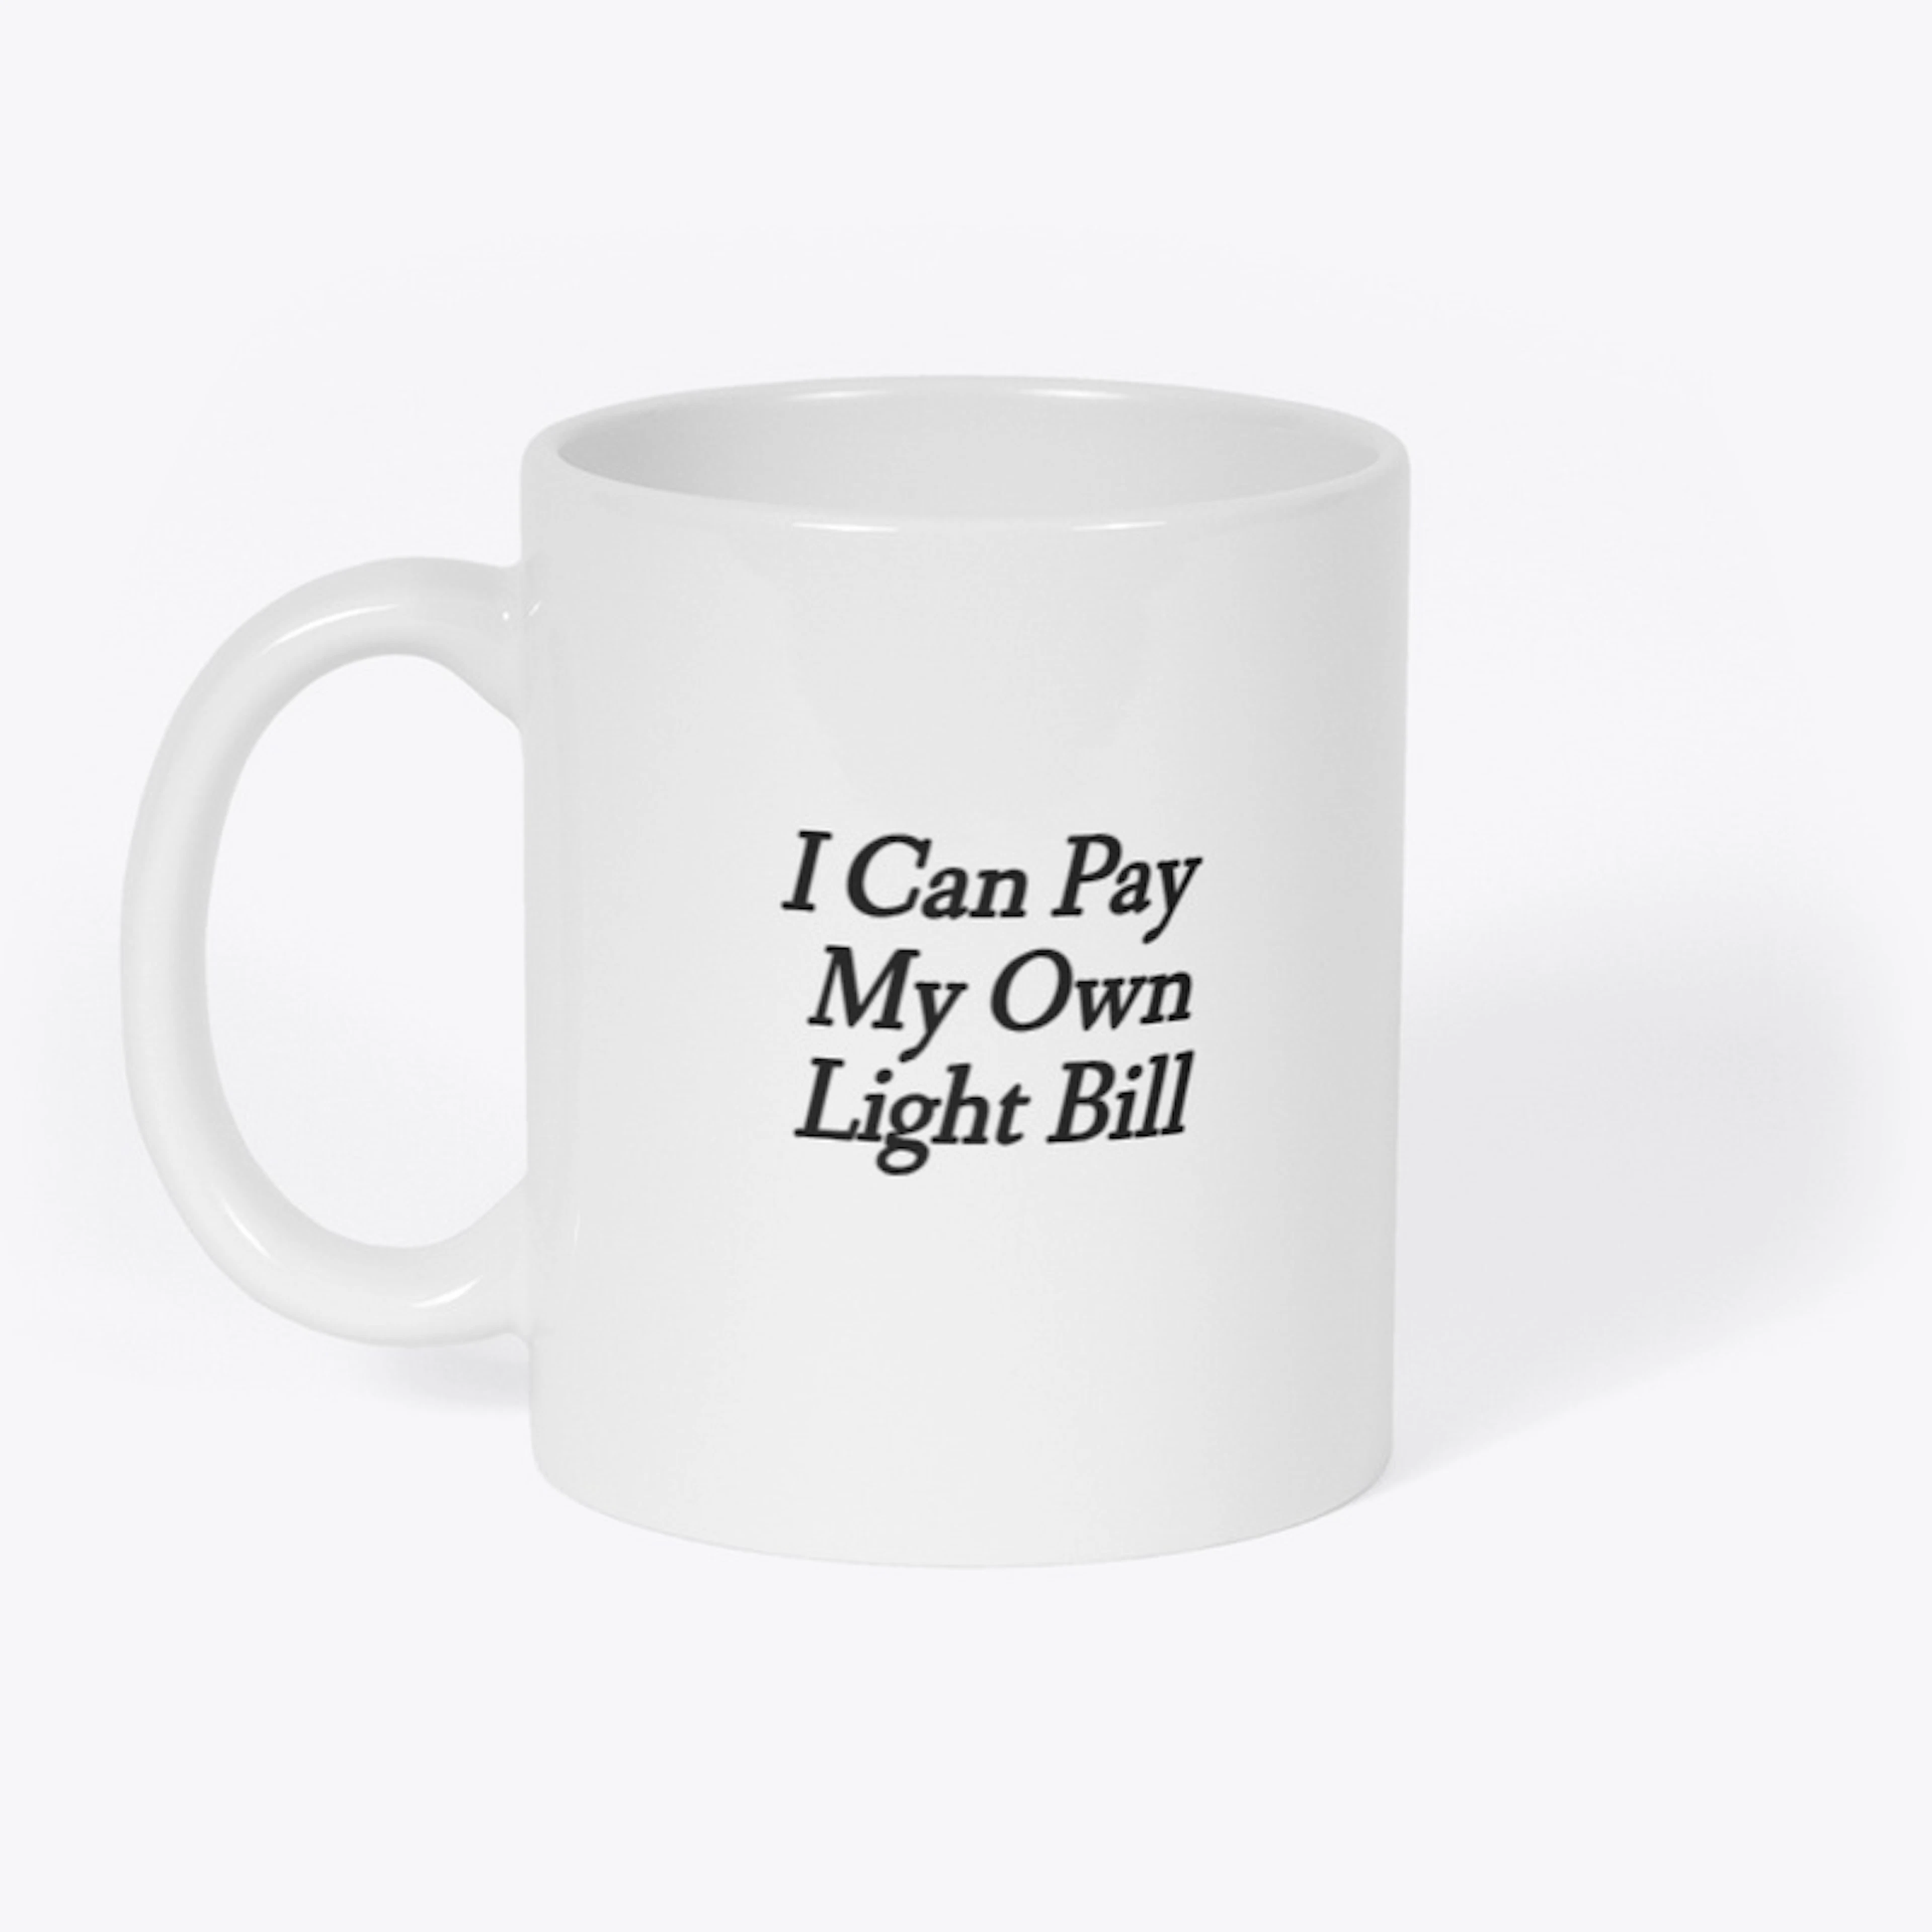 Light Bill 2